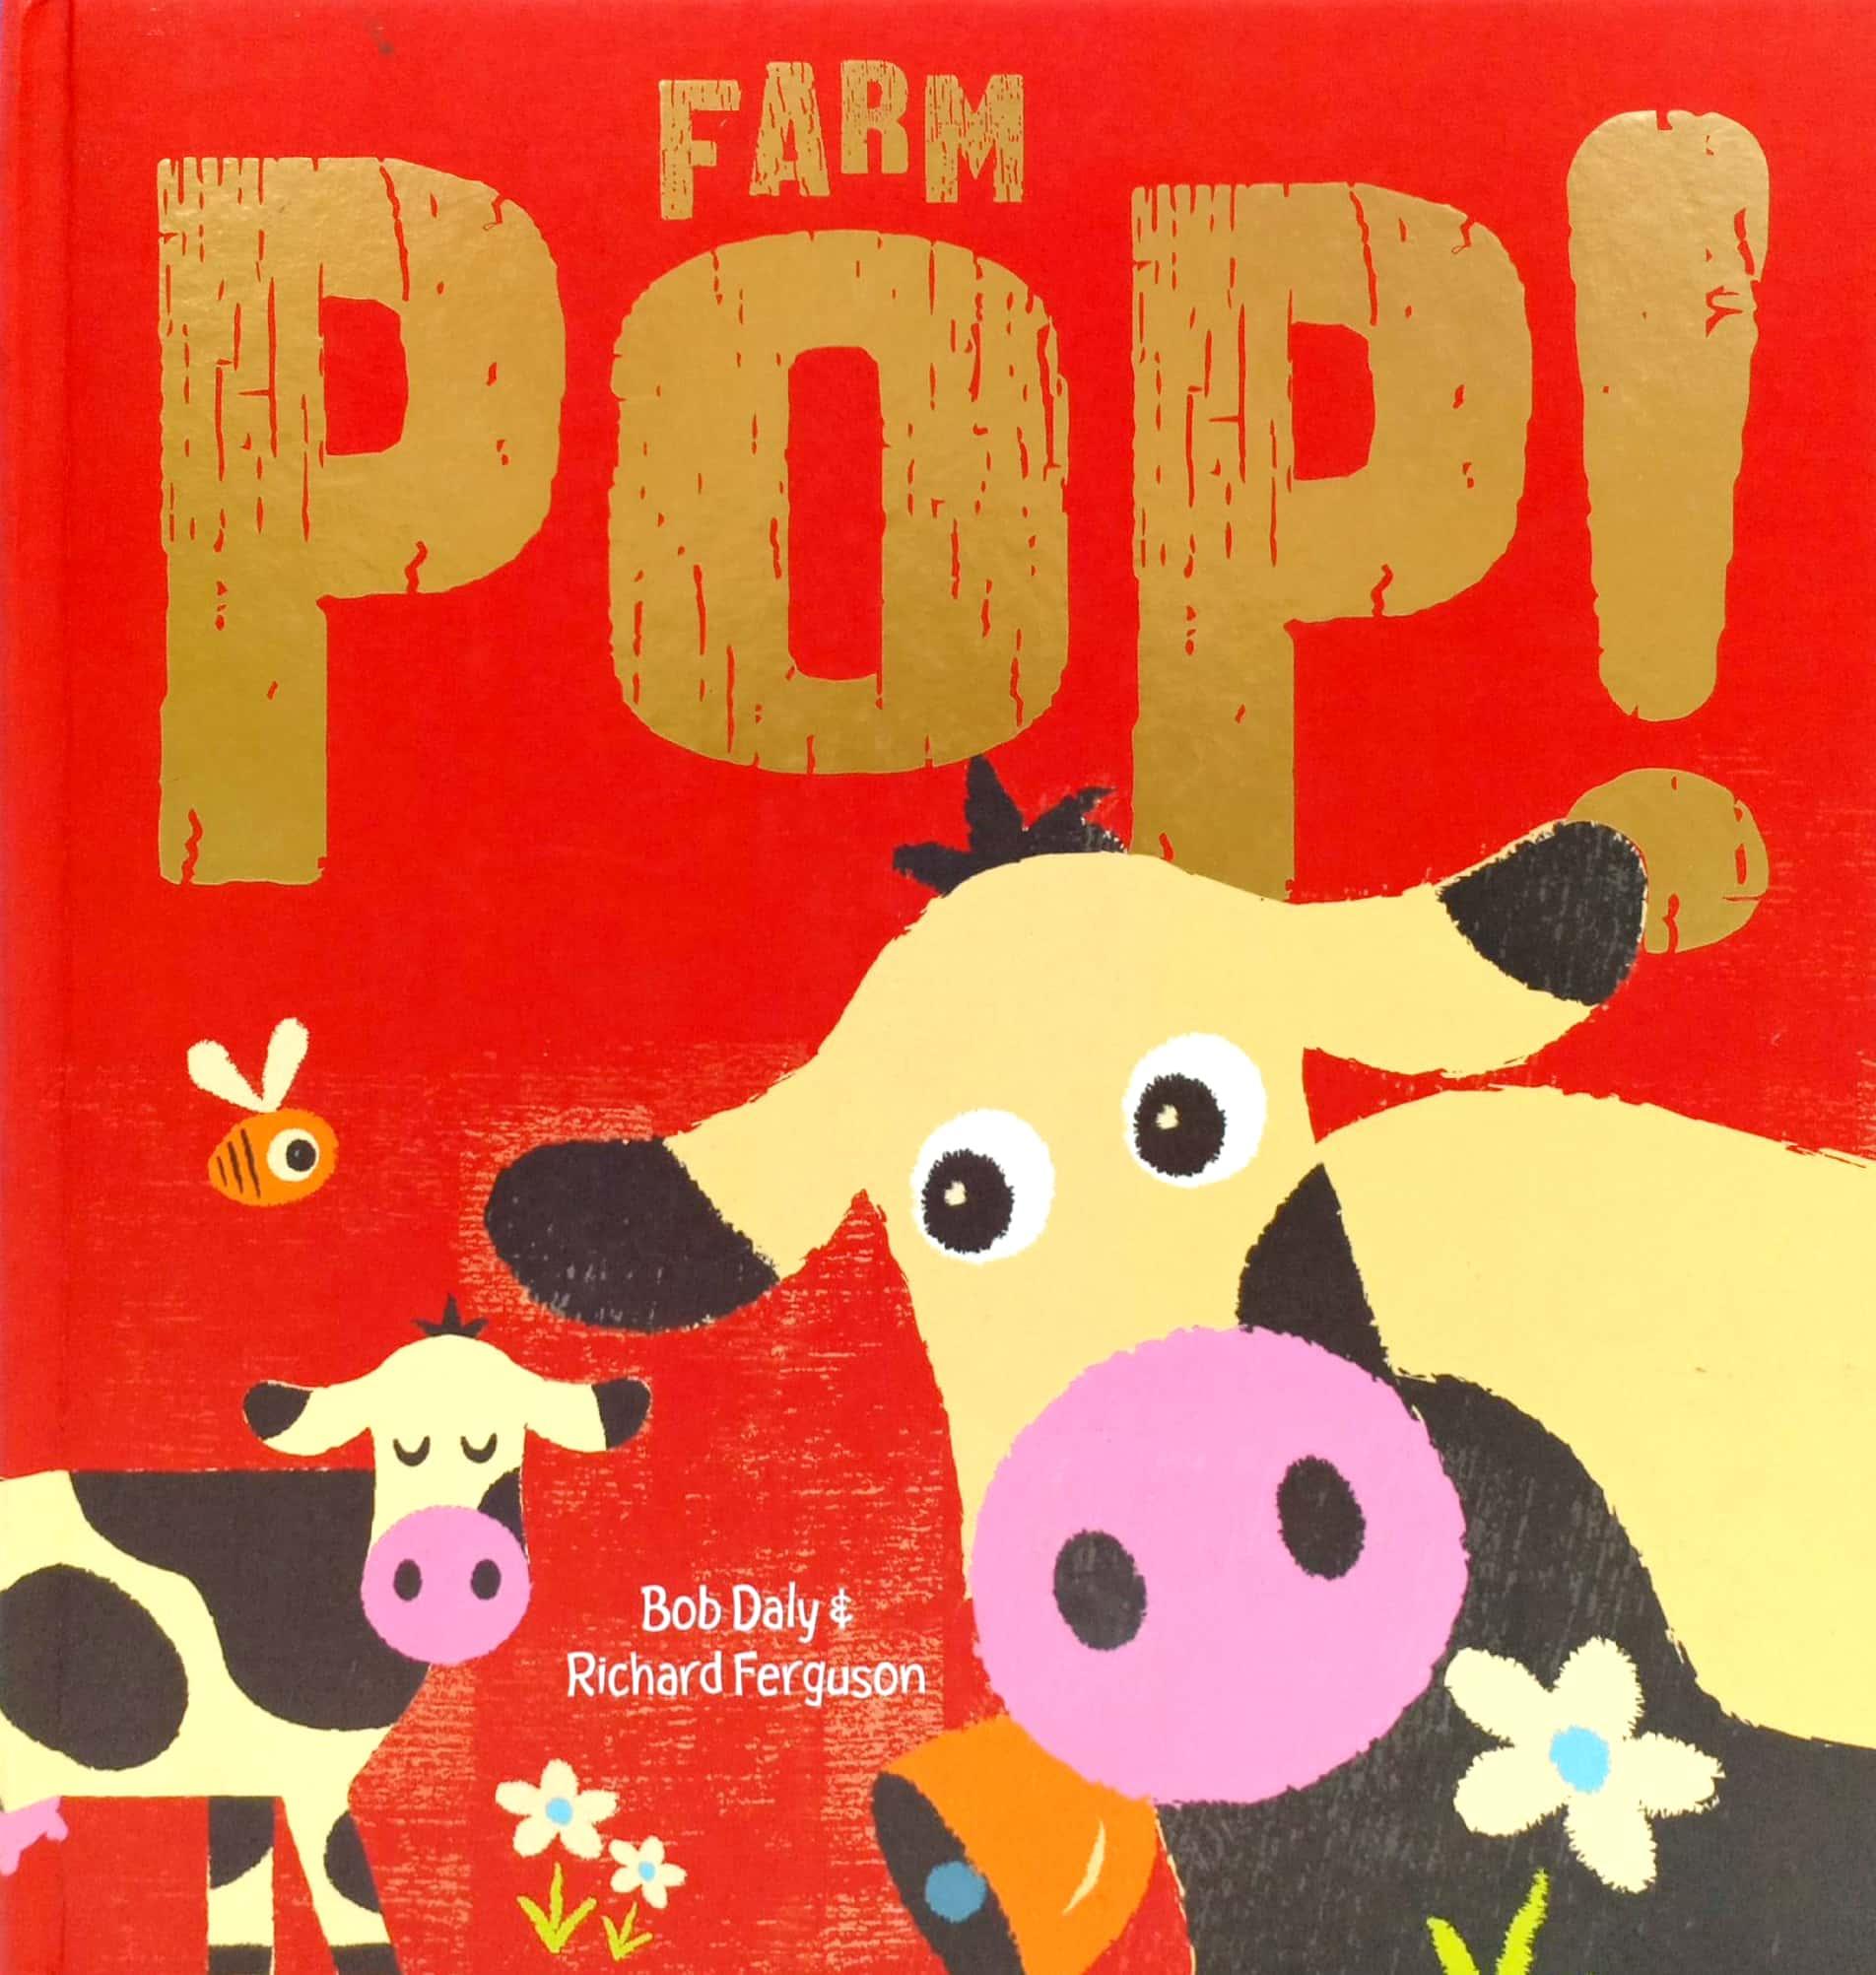 Pop! Farm